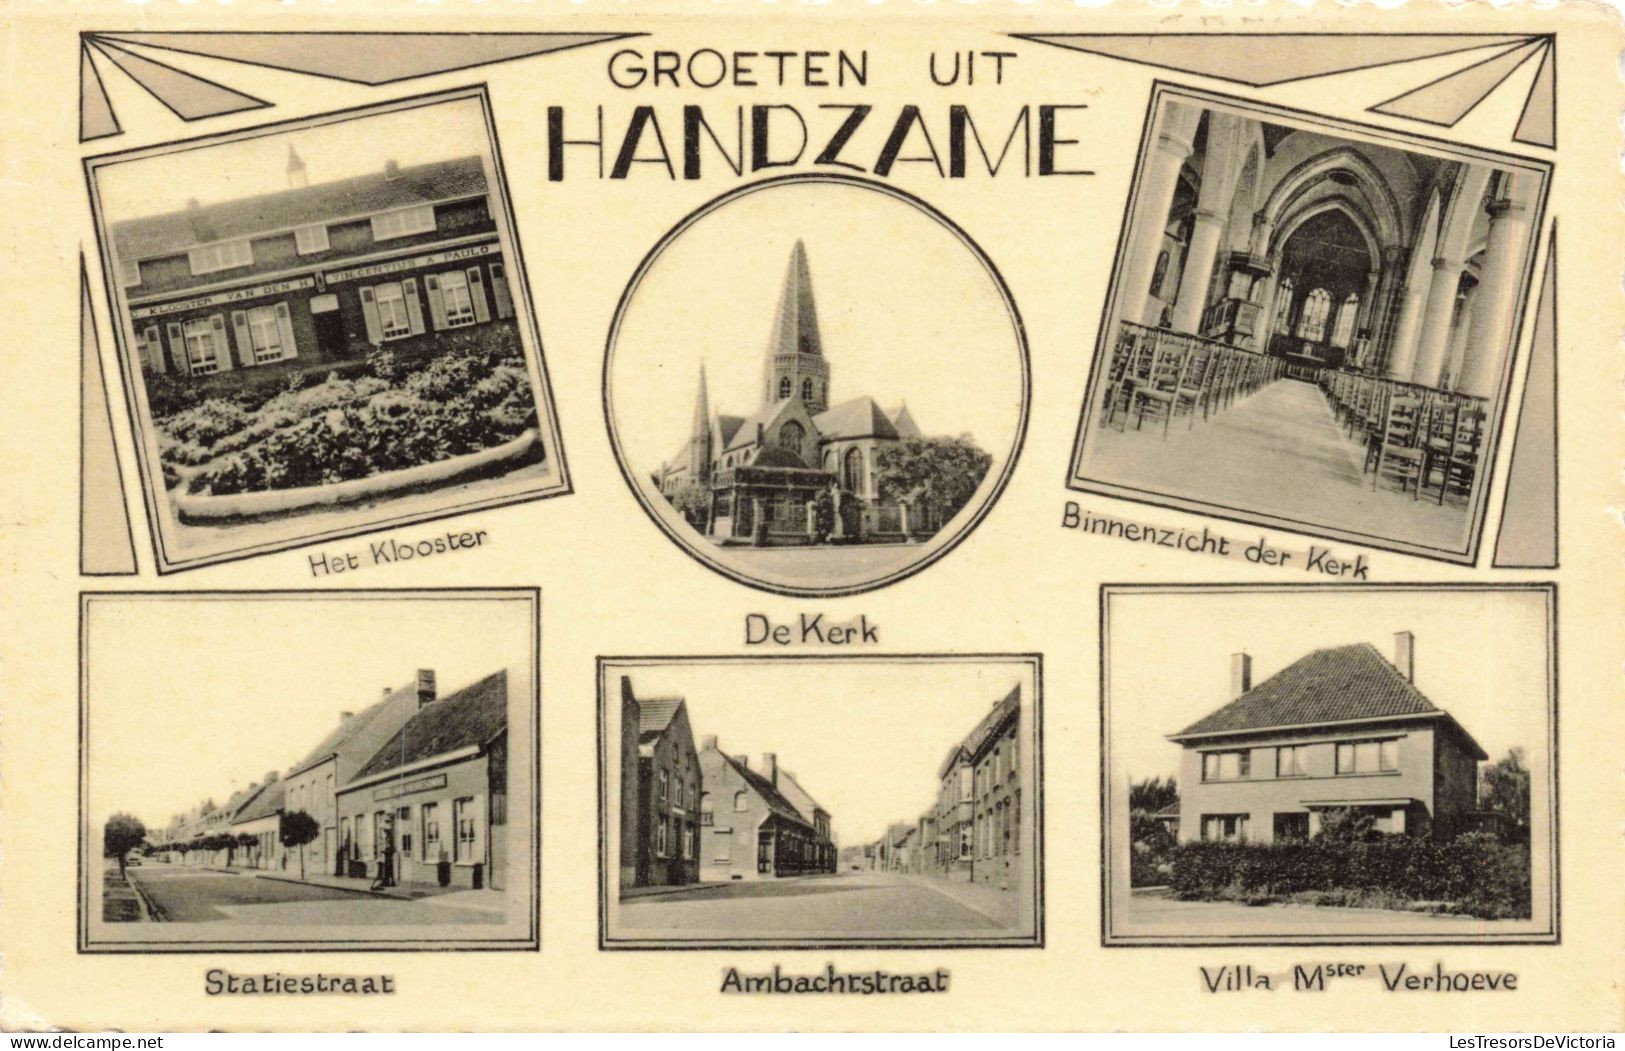 BELGIQUE - GROETEN UIT HANDZAME - Hat Kobster - De Kerk - Ville De Handzame - Carte Postale Ancienne - Diksmuide